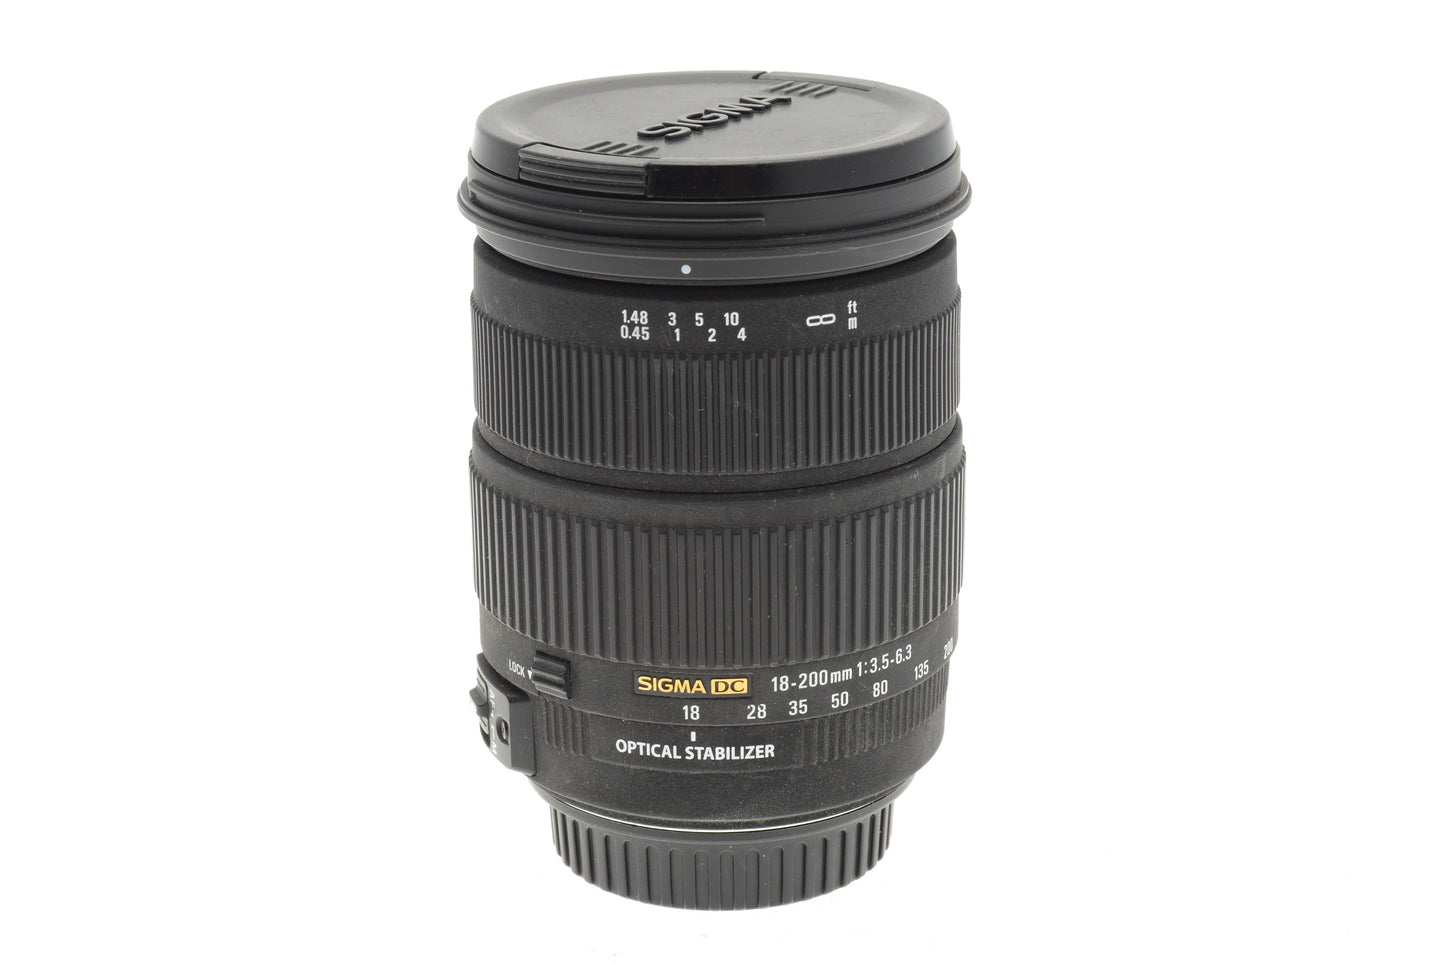 Sigma 18-200mm f3.5-6.3 DC OS - Lens